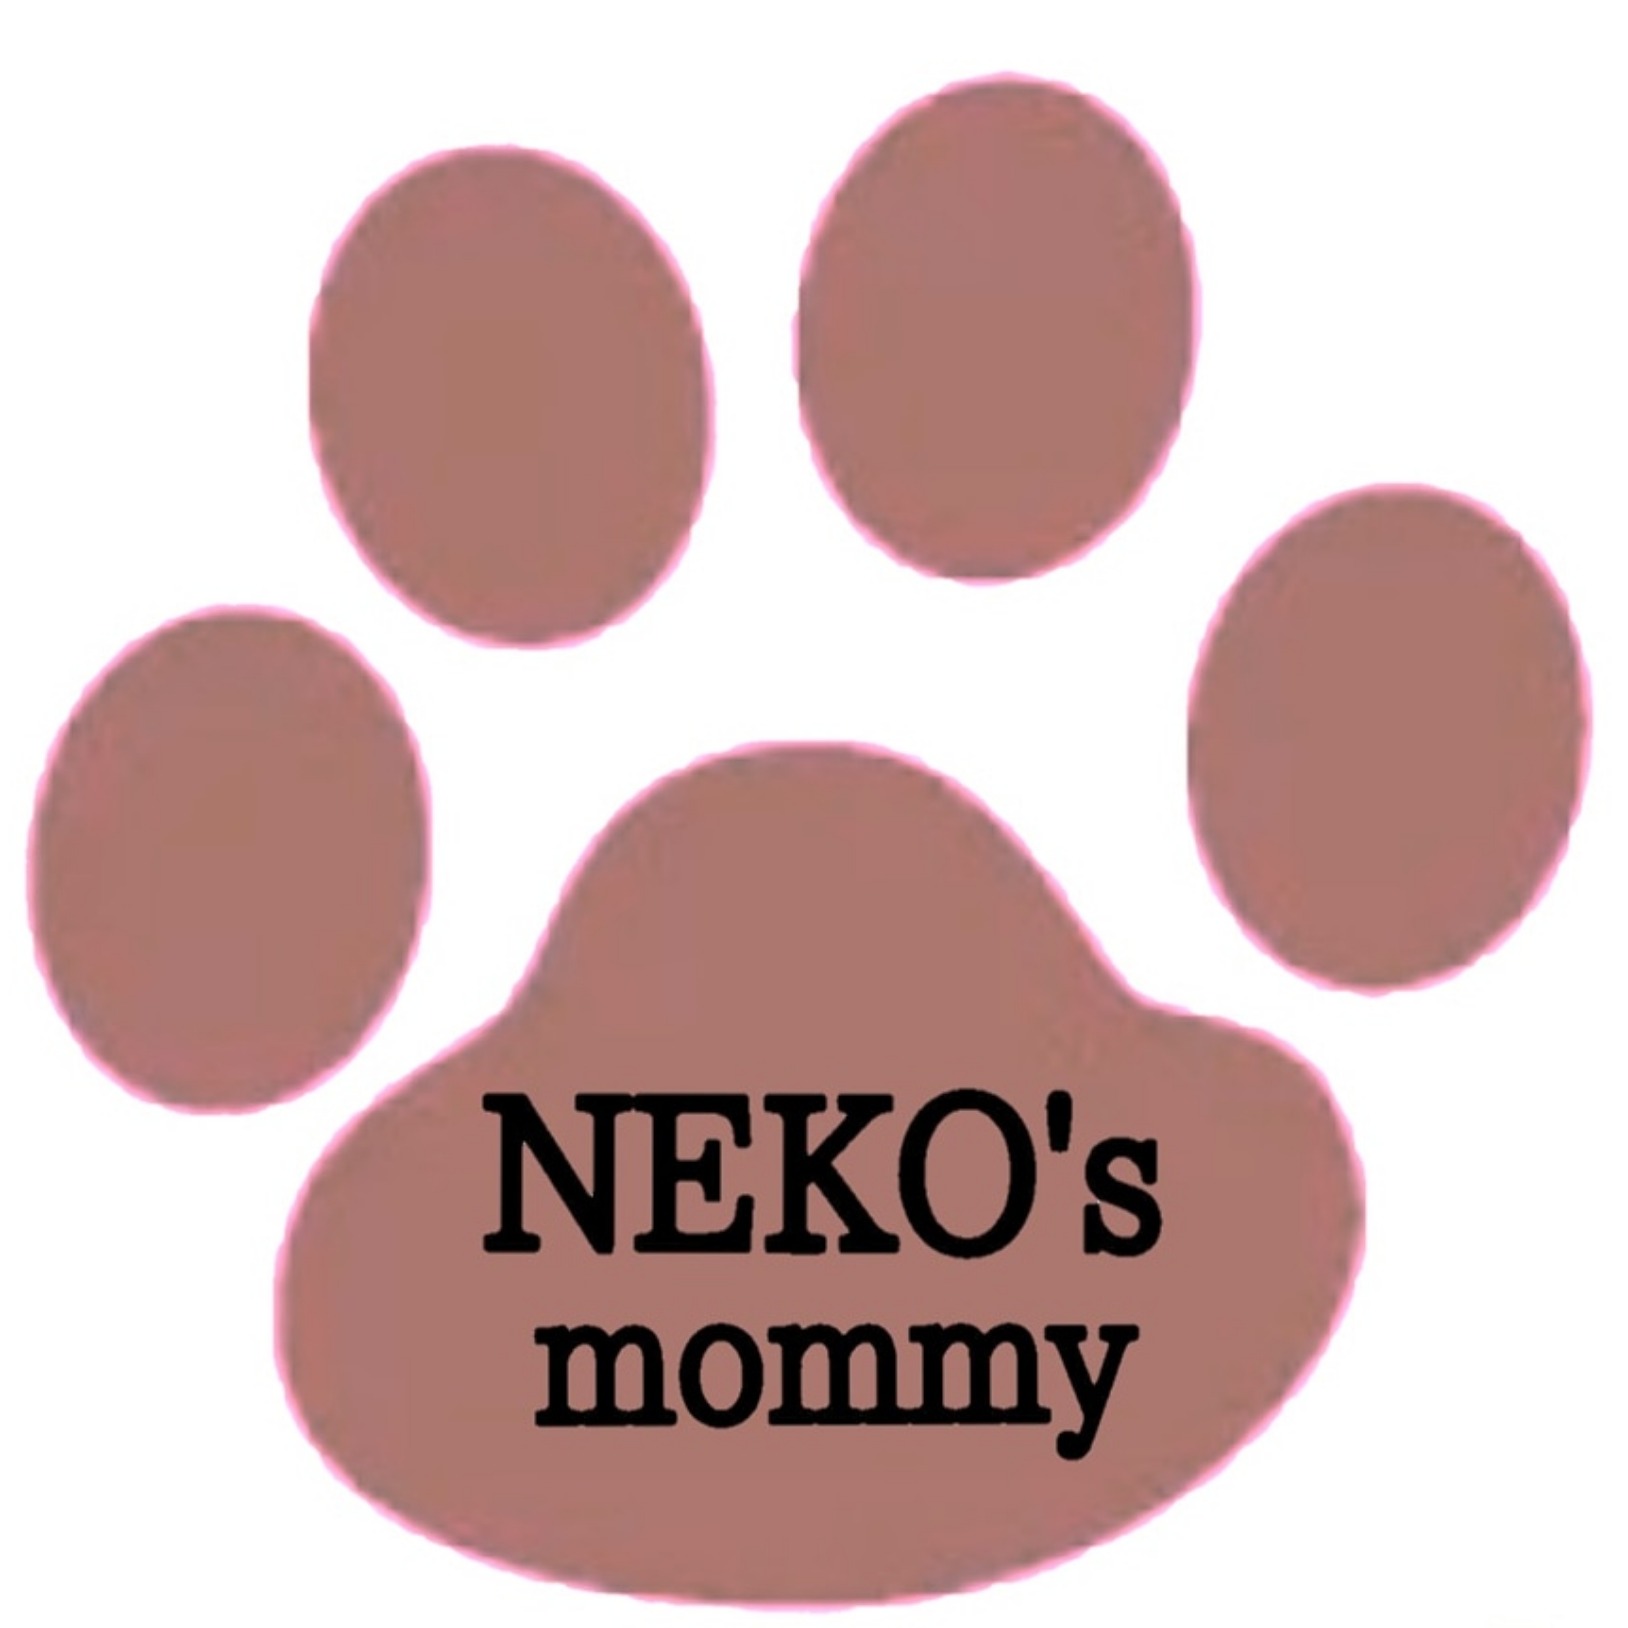 NEKO's mommy